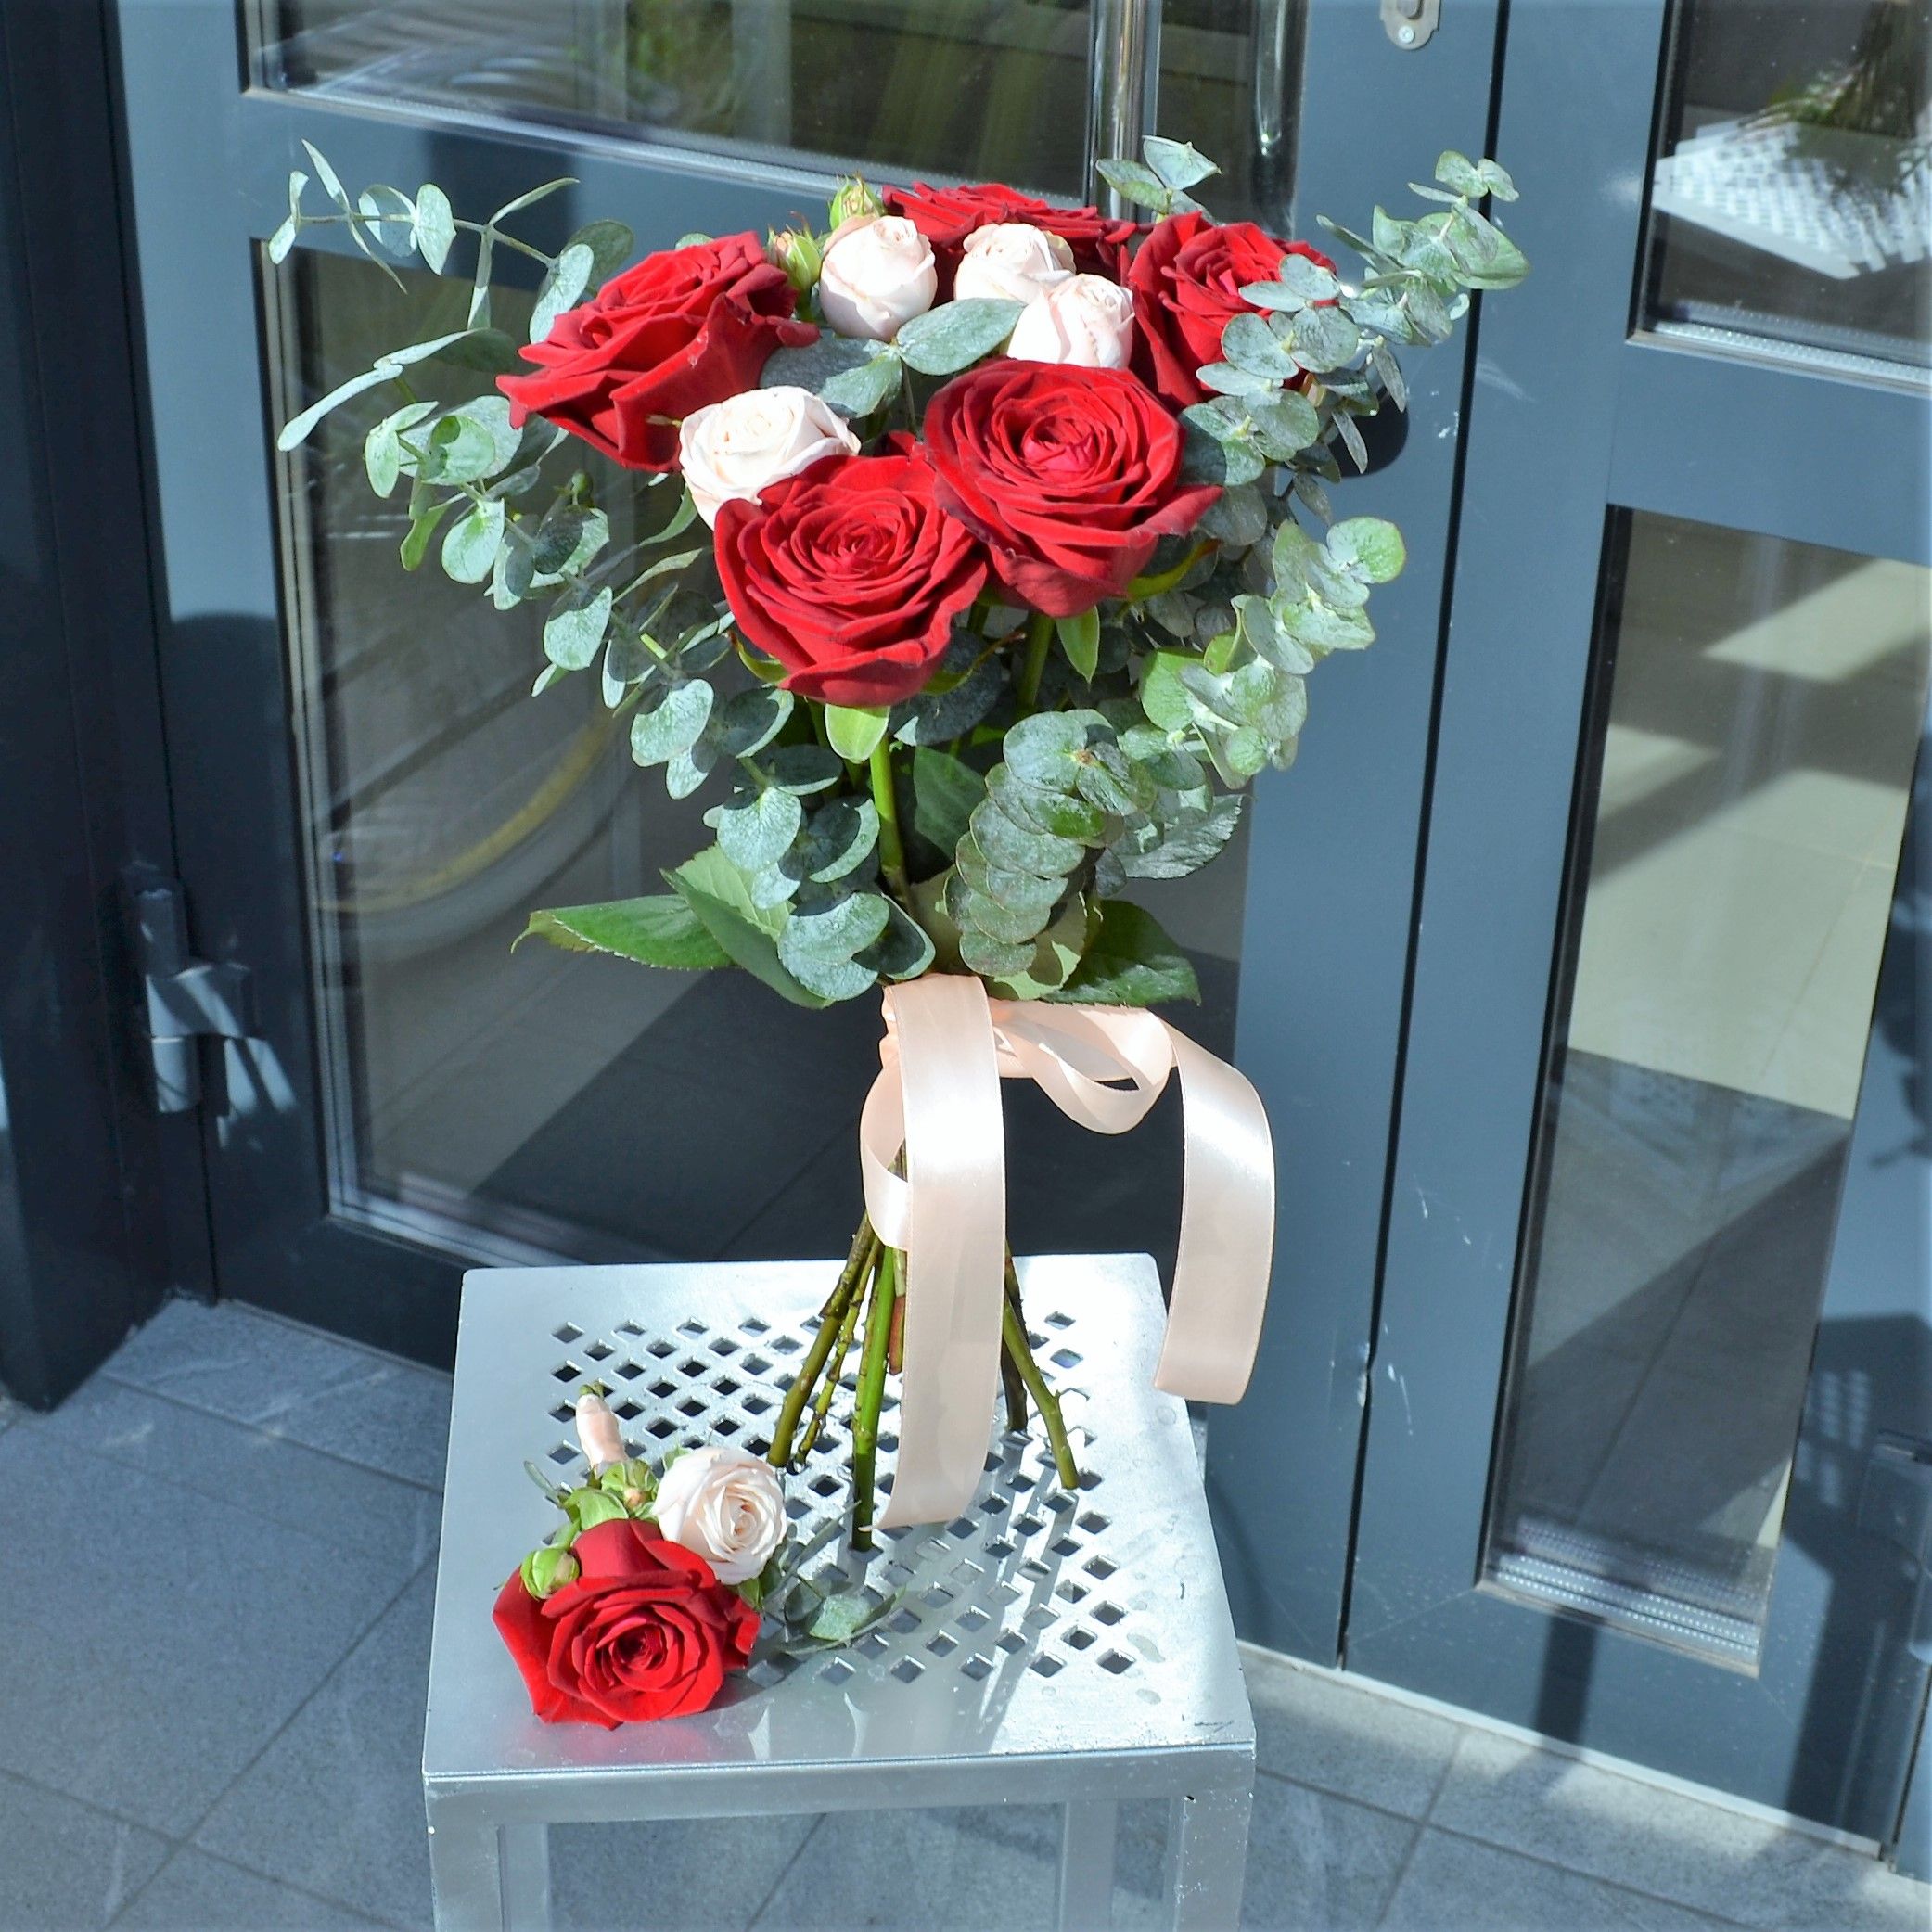 Свадебный букет из красных роз